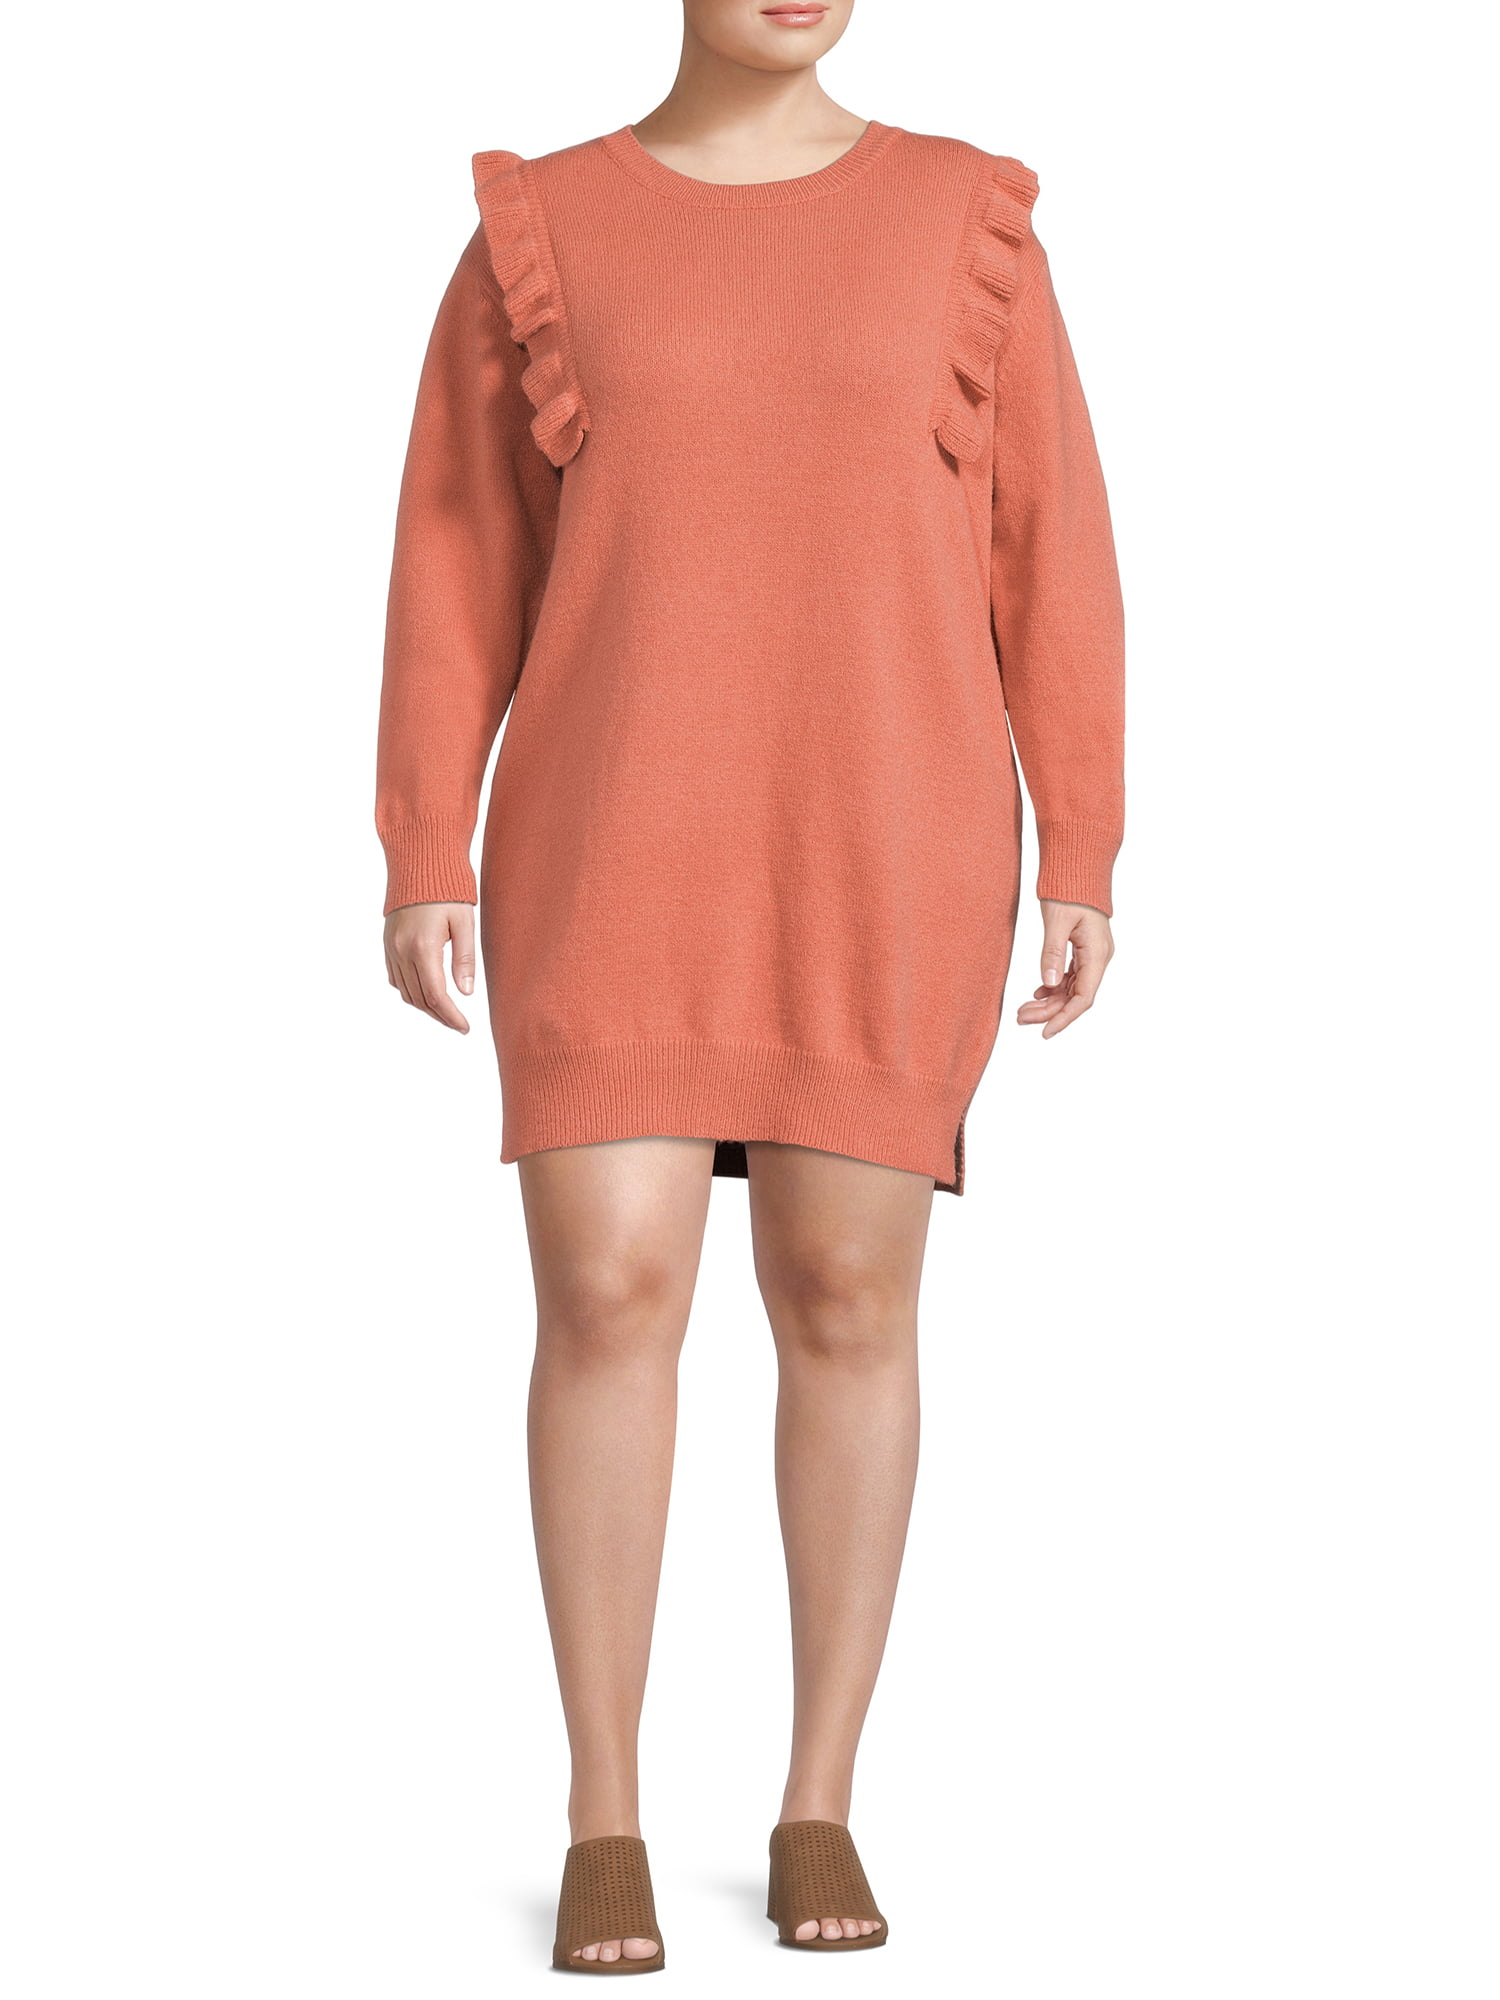 Map Print Sporty Sweater Dress - Women - Ready-to-Wear